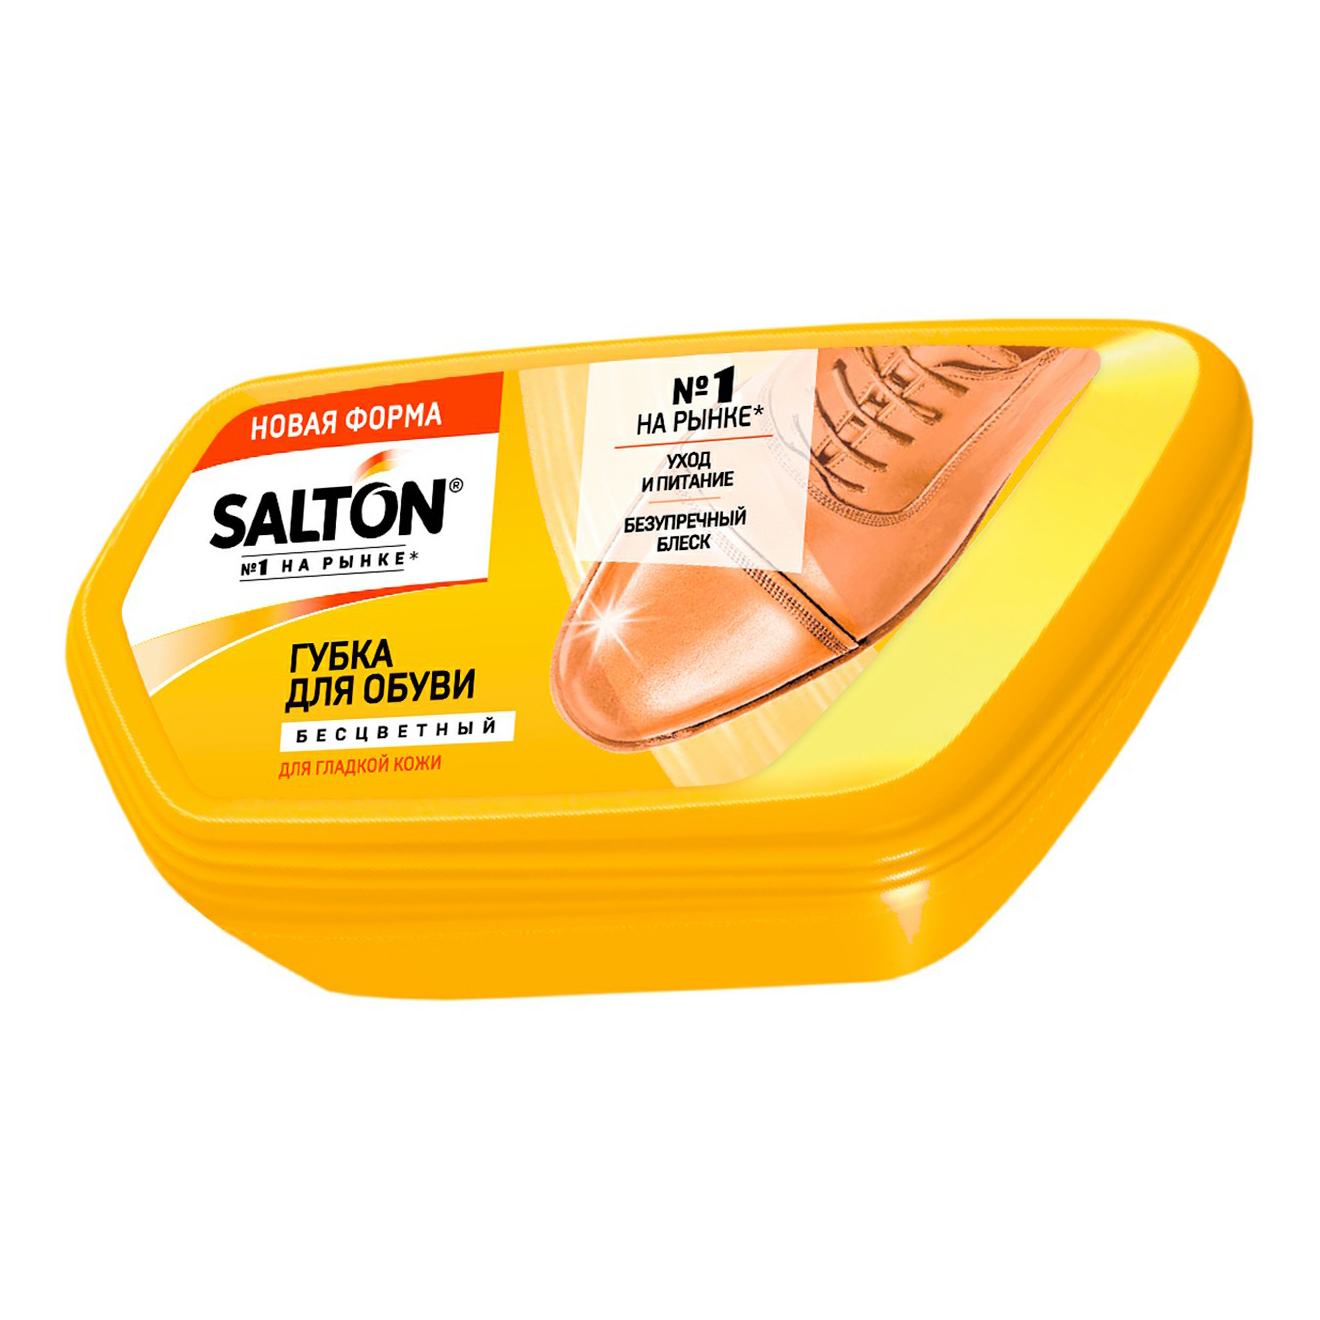 Губка для обуви Salton для гладкой кожи бесцветная